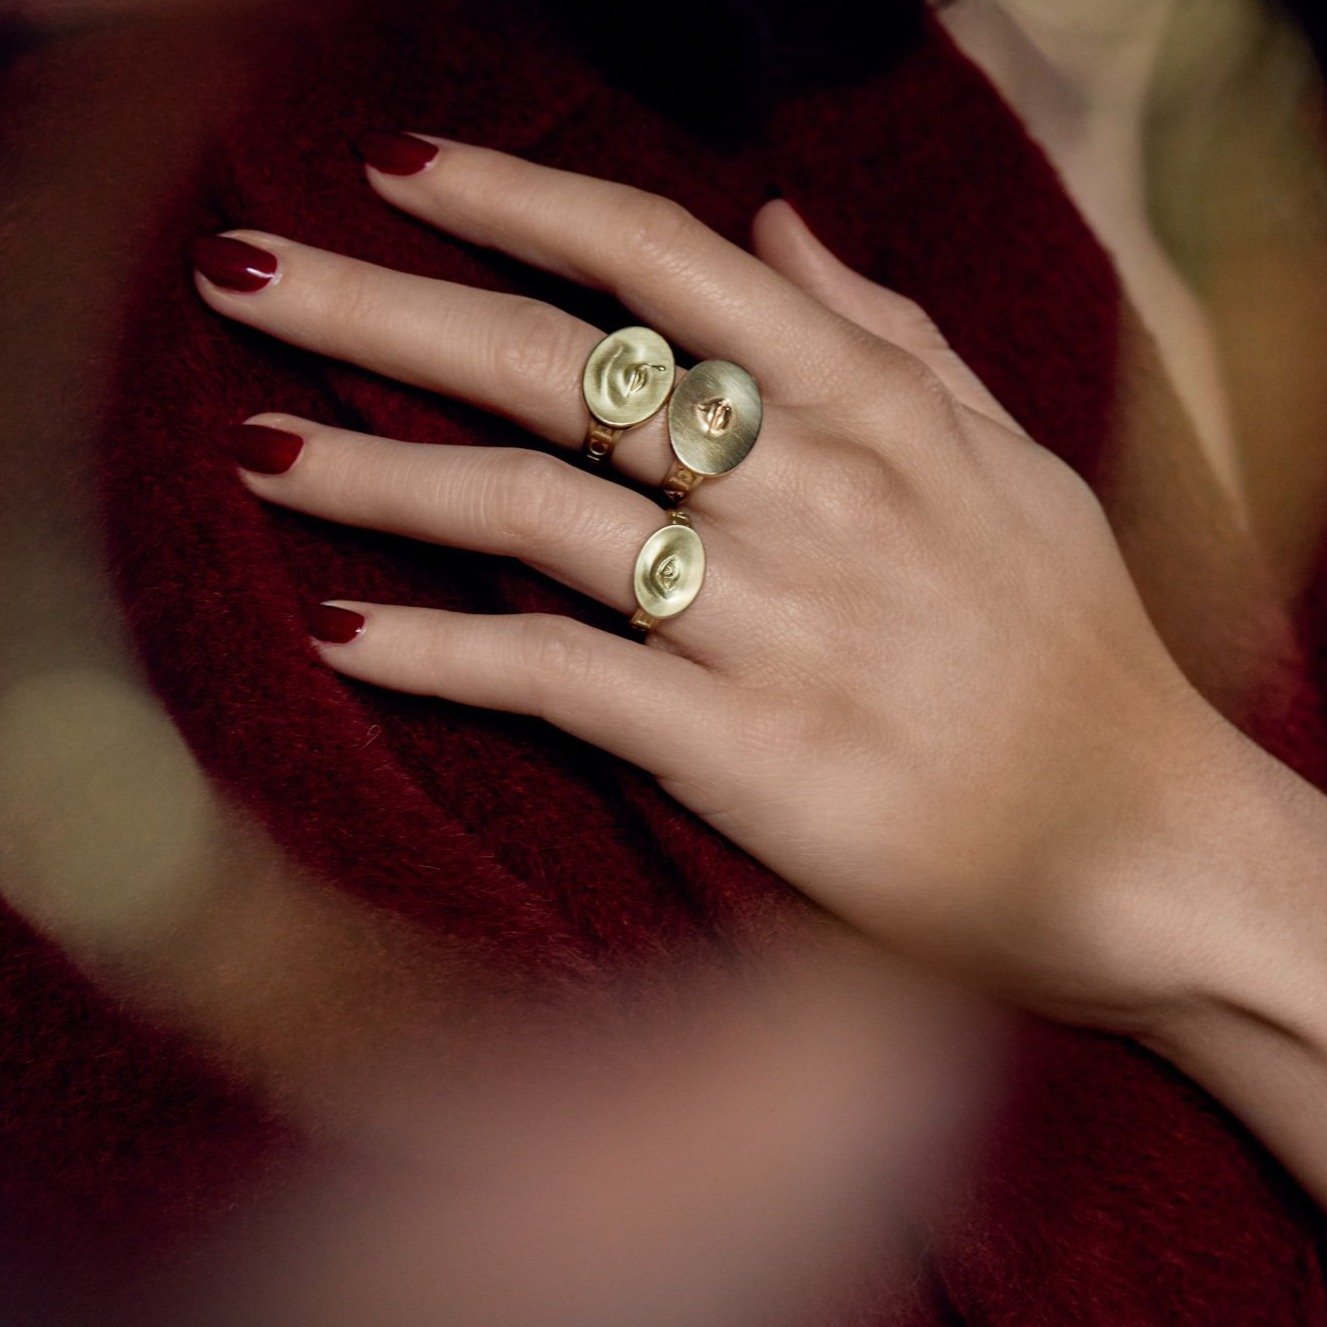 Gabriella Kiss 14k Small Eye Love Token Ring Inscribed with "Invigilare"